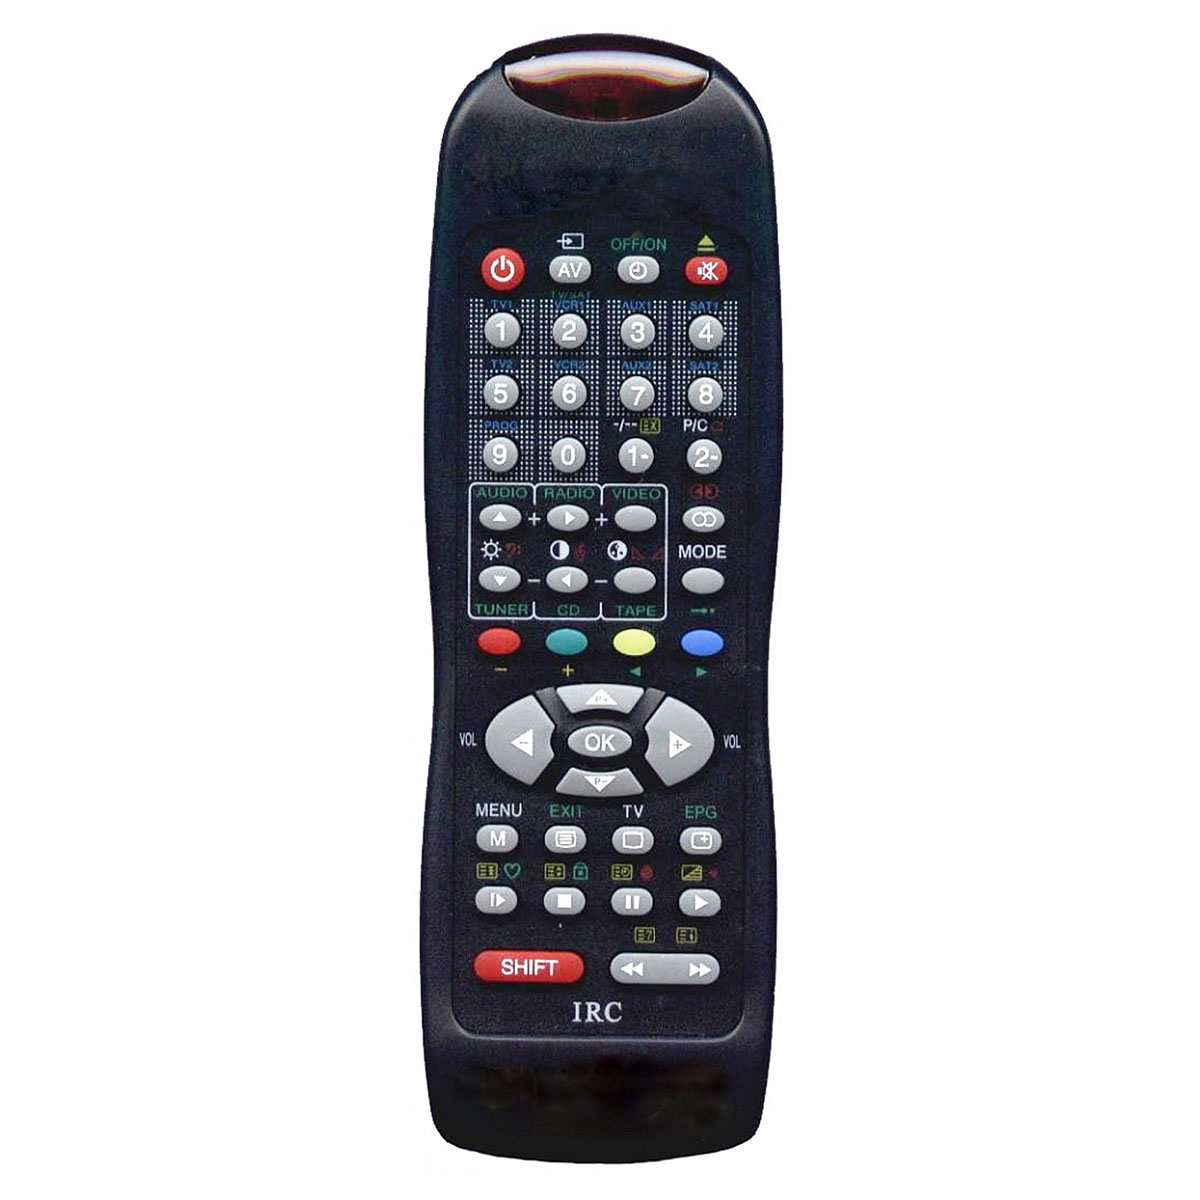 Пульт ДУ универсальный для IRC-28E DVD SUPRA TV, TV / VCR, VCR, AUX, цвет черный.